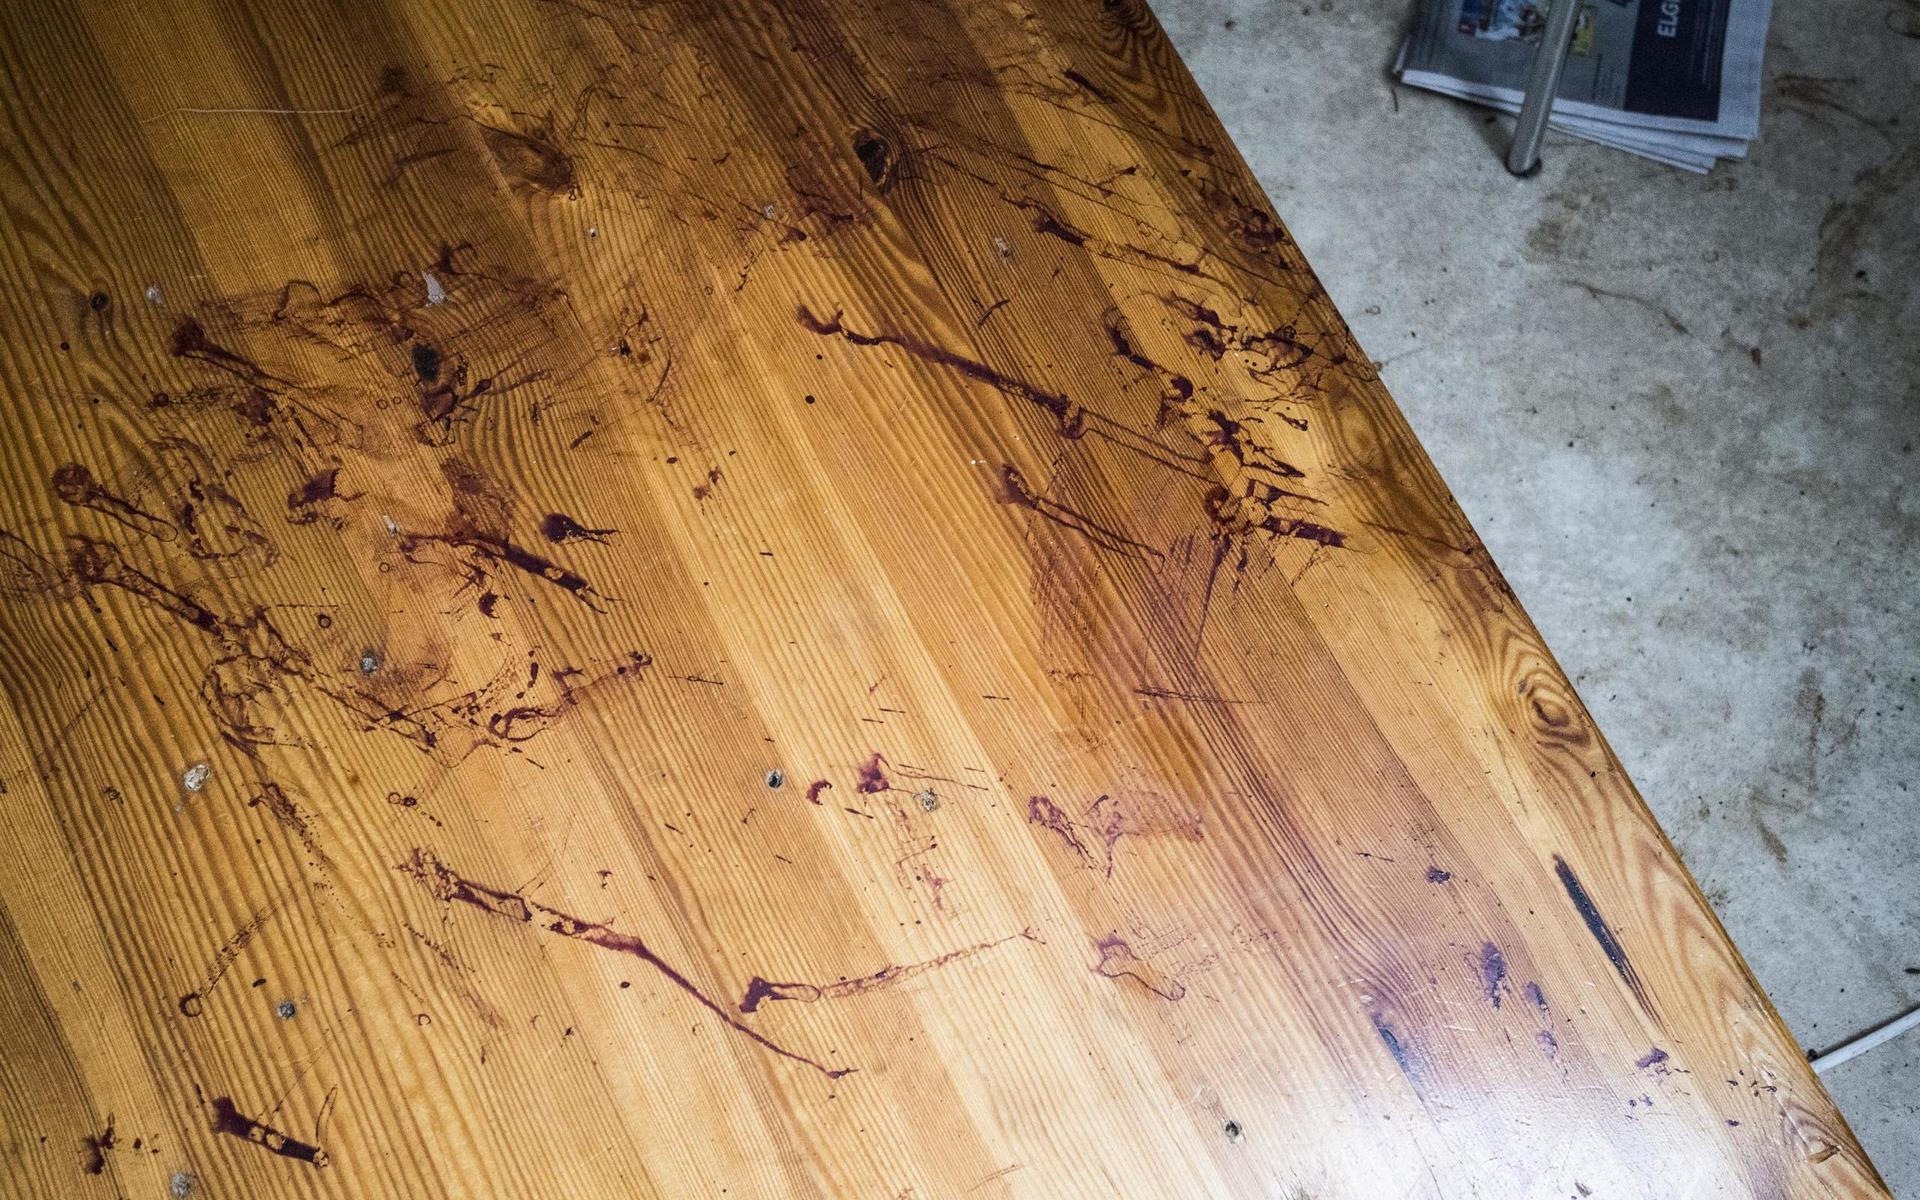 Efter den våldsamma natten var det fullt av blodspår i lägenheten, bland annat på golvet.